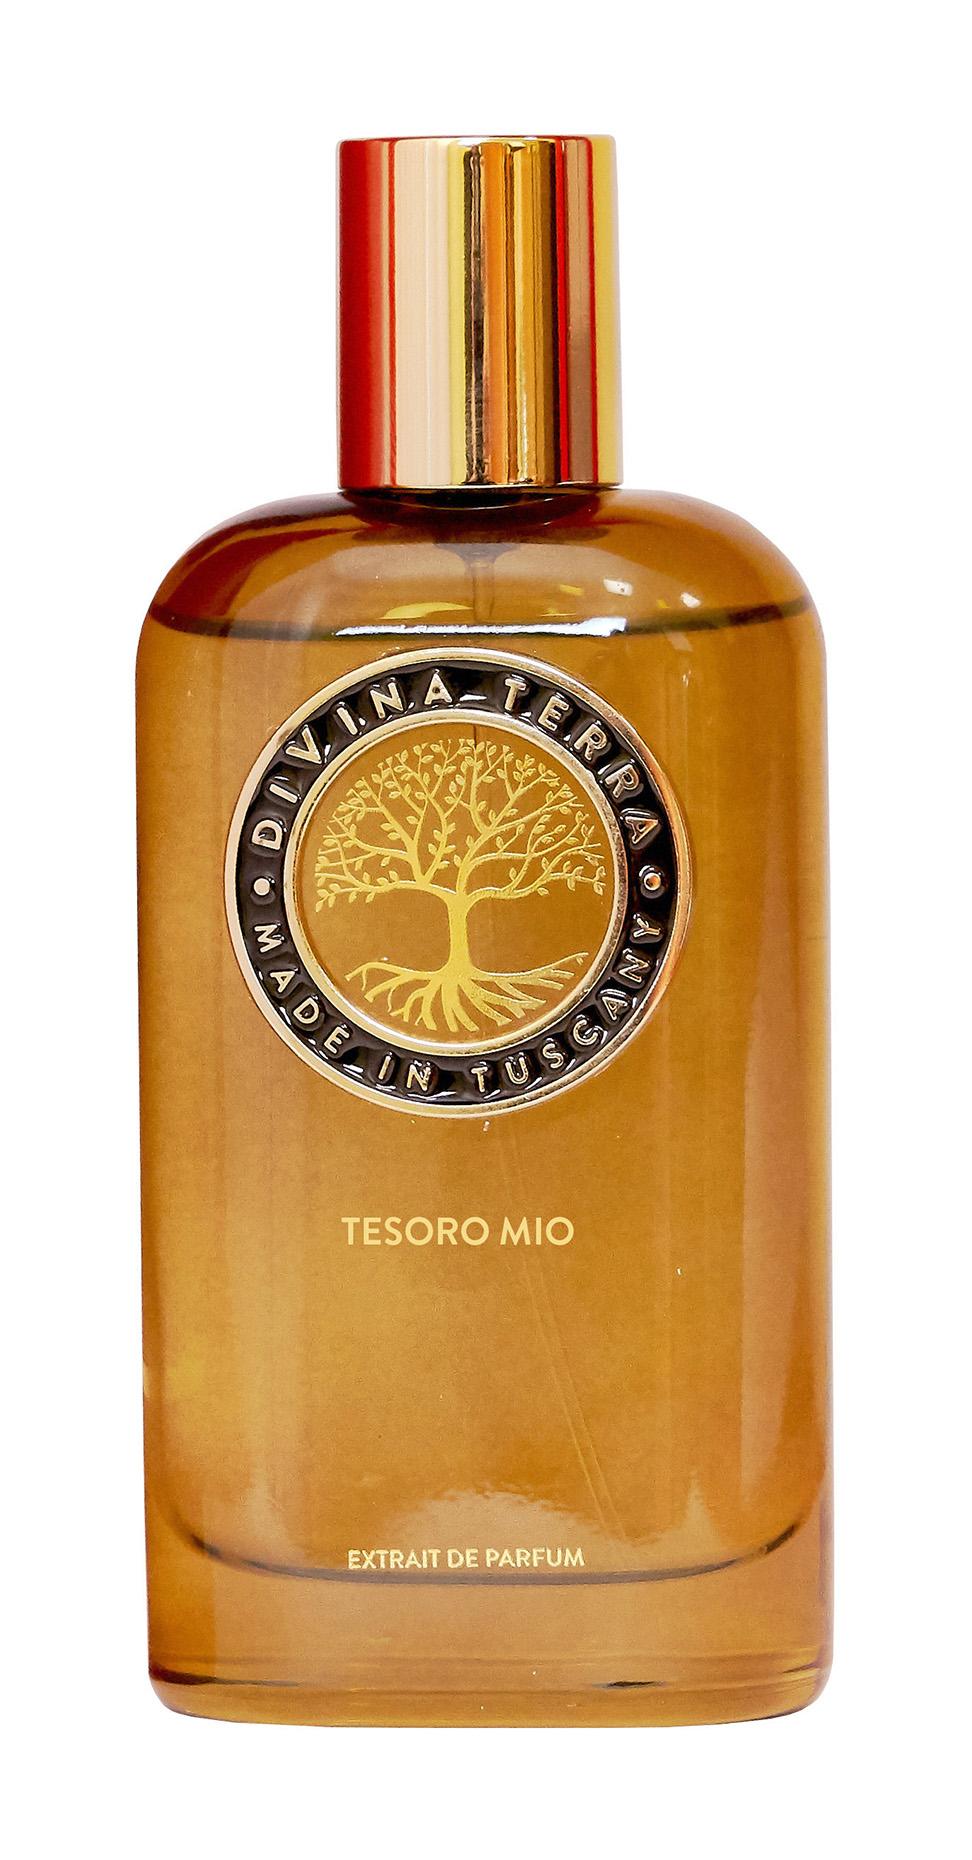 Купить Духи Divina Terra Tesoro Mio Extrait de Parfum, 100 мл